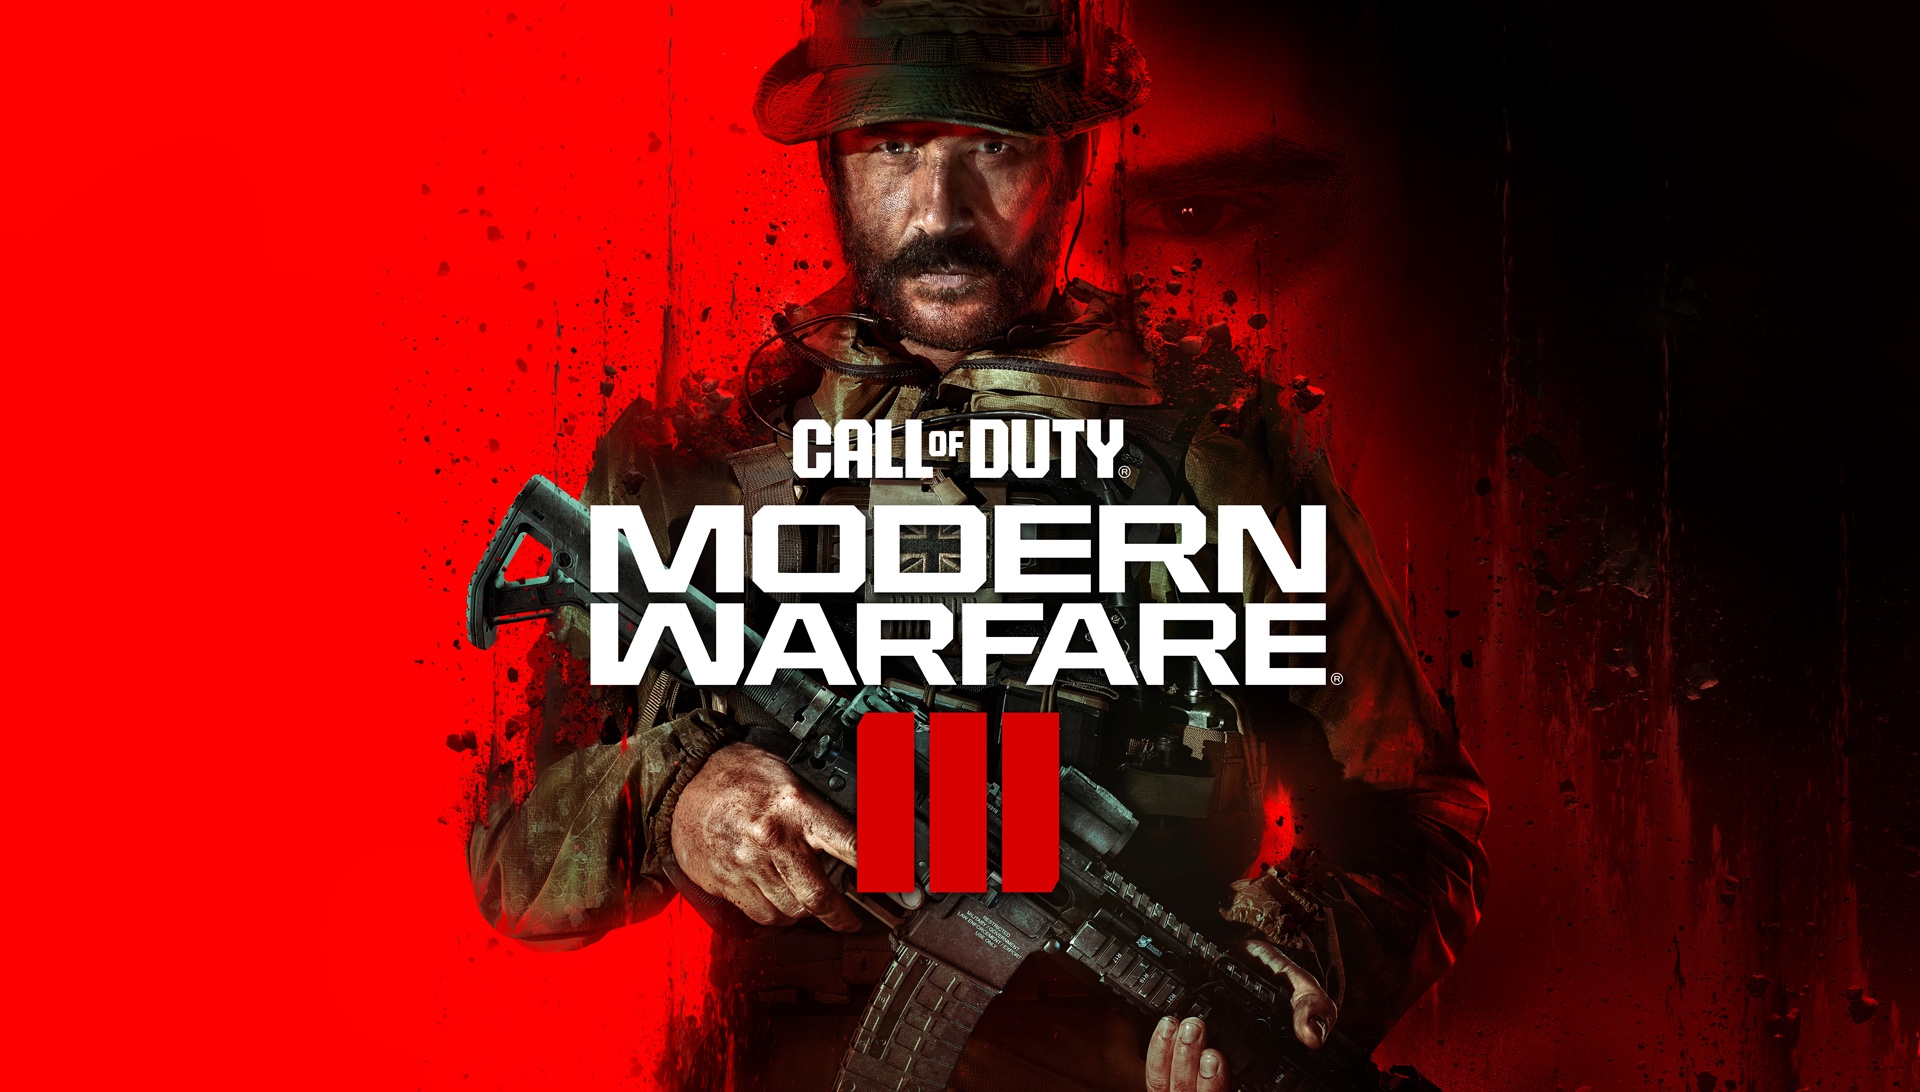 Presentazione mondiale: Annuncio di Call of Duty: Modern Warfare III